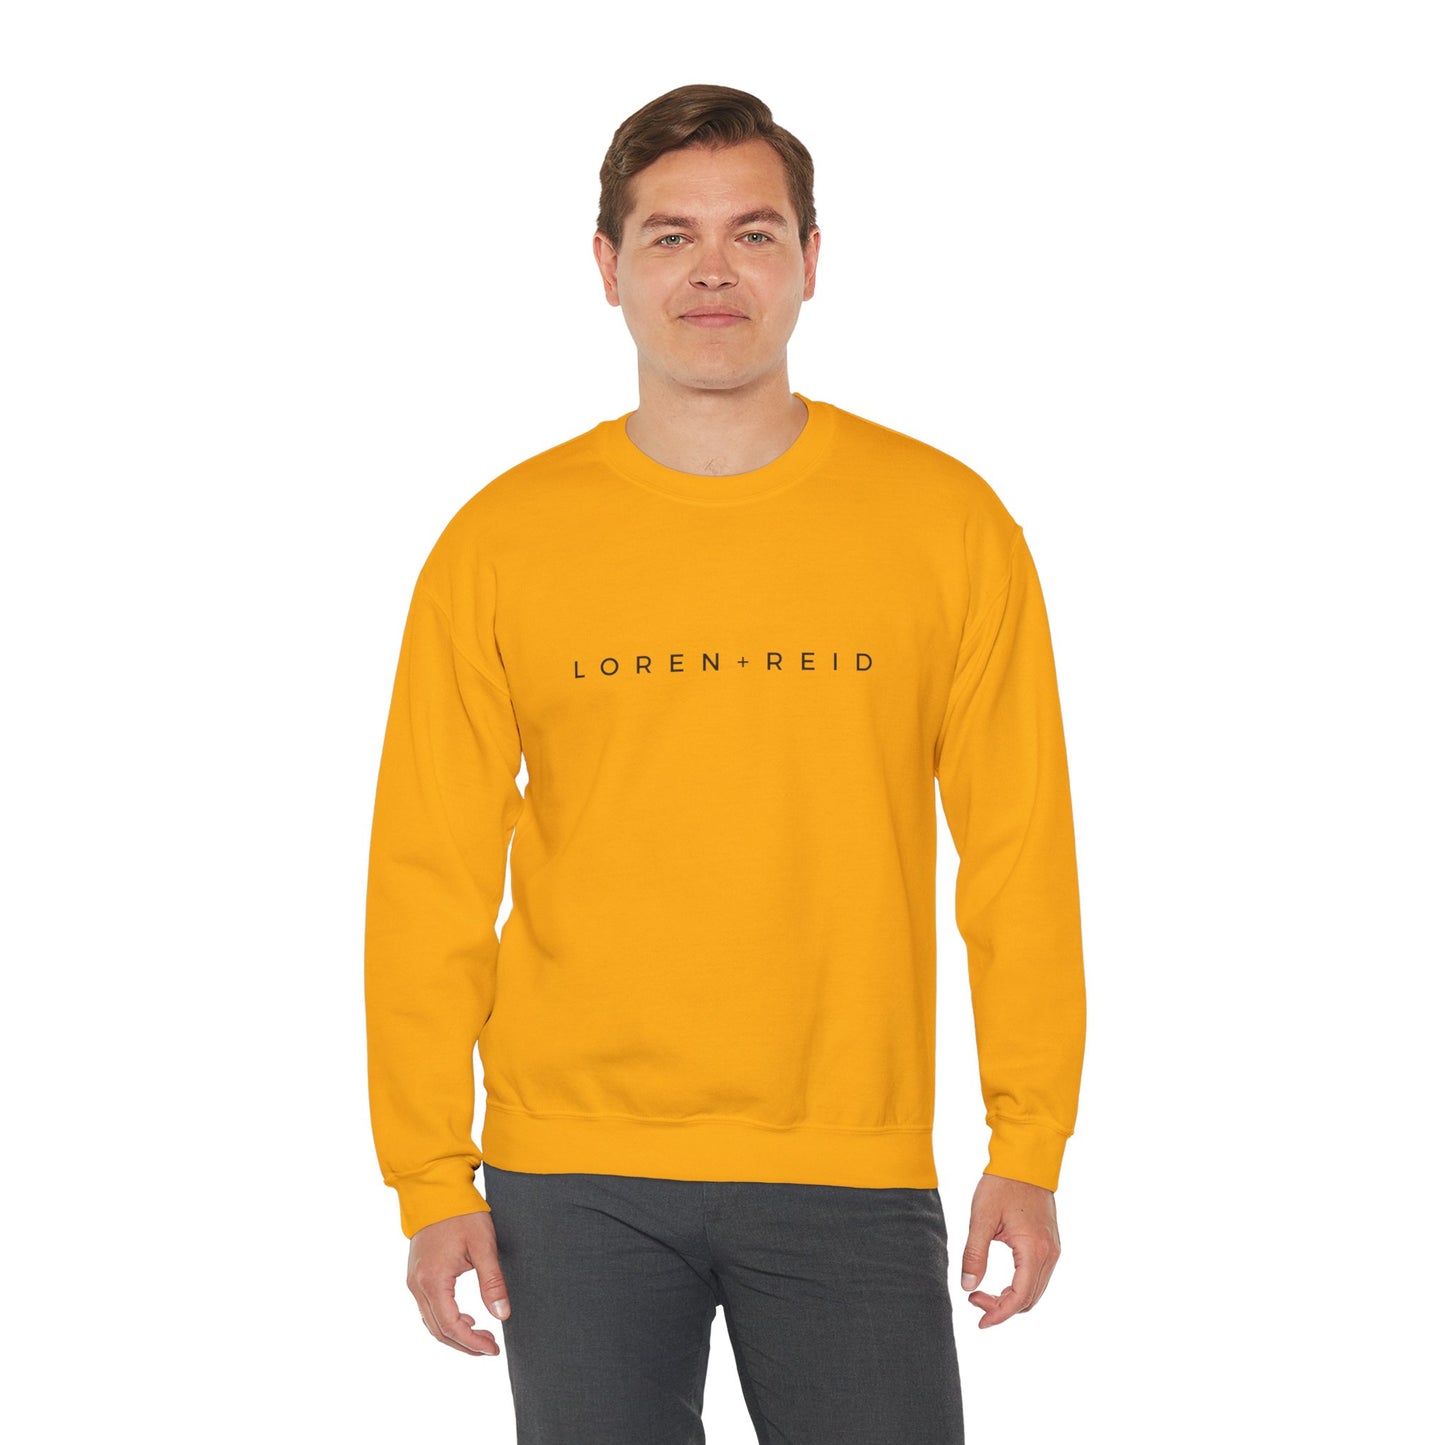 L+R Signature ™ Crewneck Sweatshirt